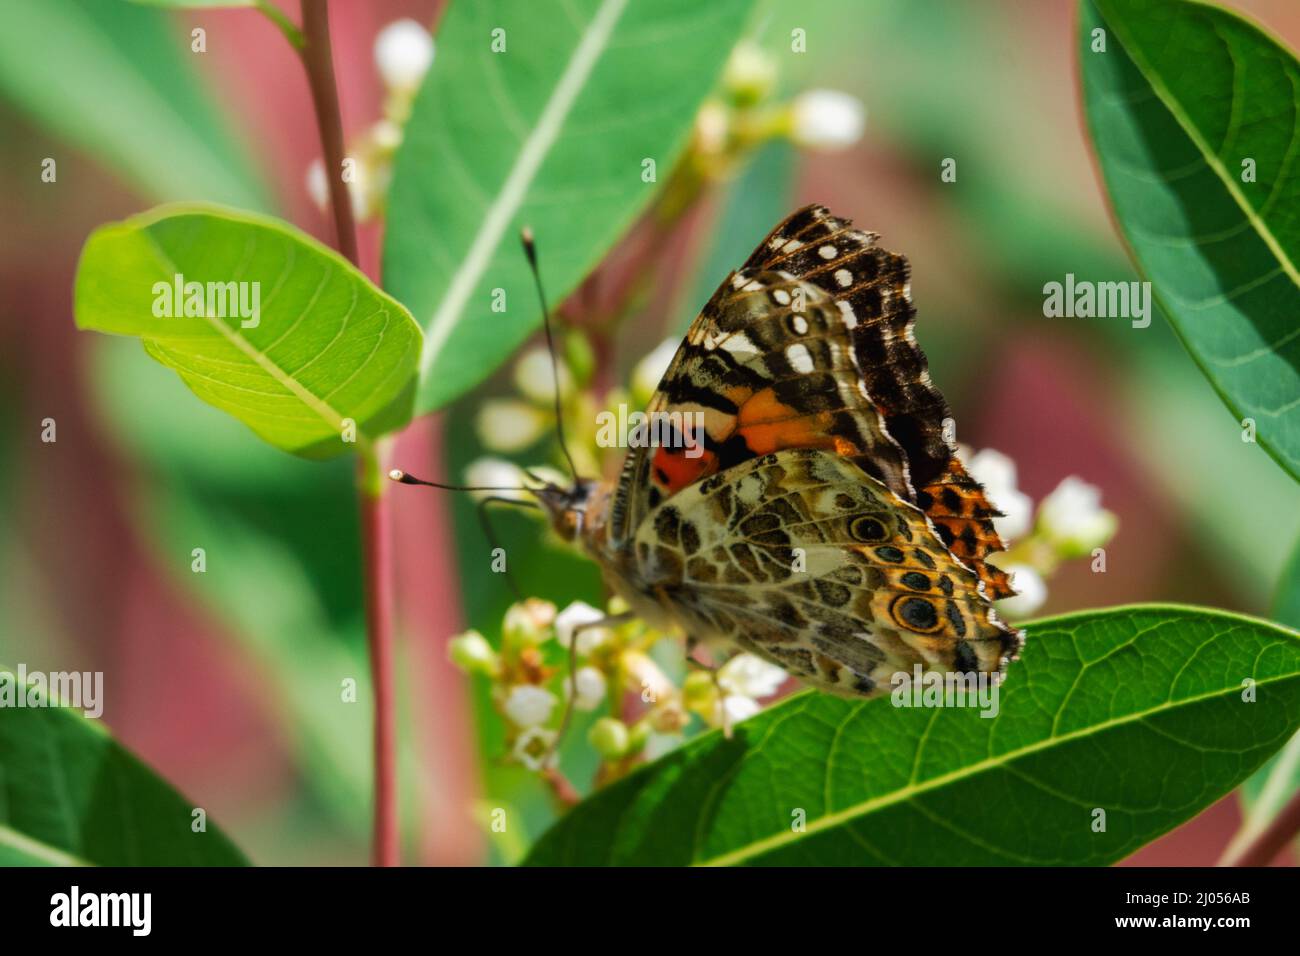 Un papillon peint de dame se nourrit de fleurs. Vue de dessus vers le bas avec l'arrière des ailes en évidence. Banque D'Images